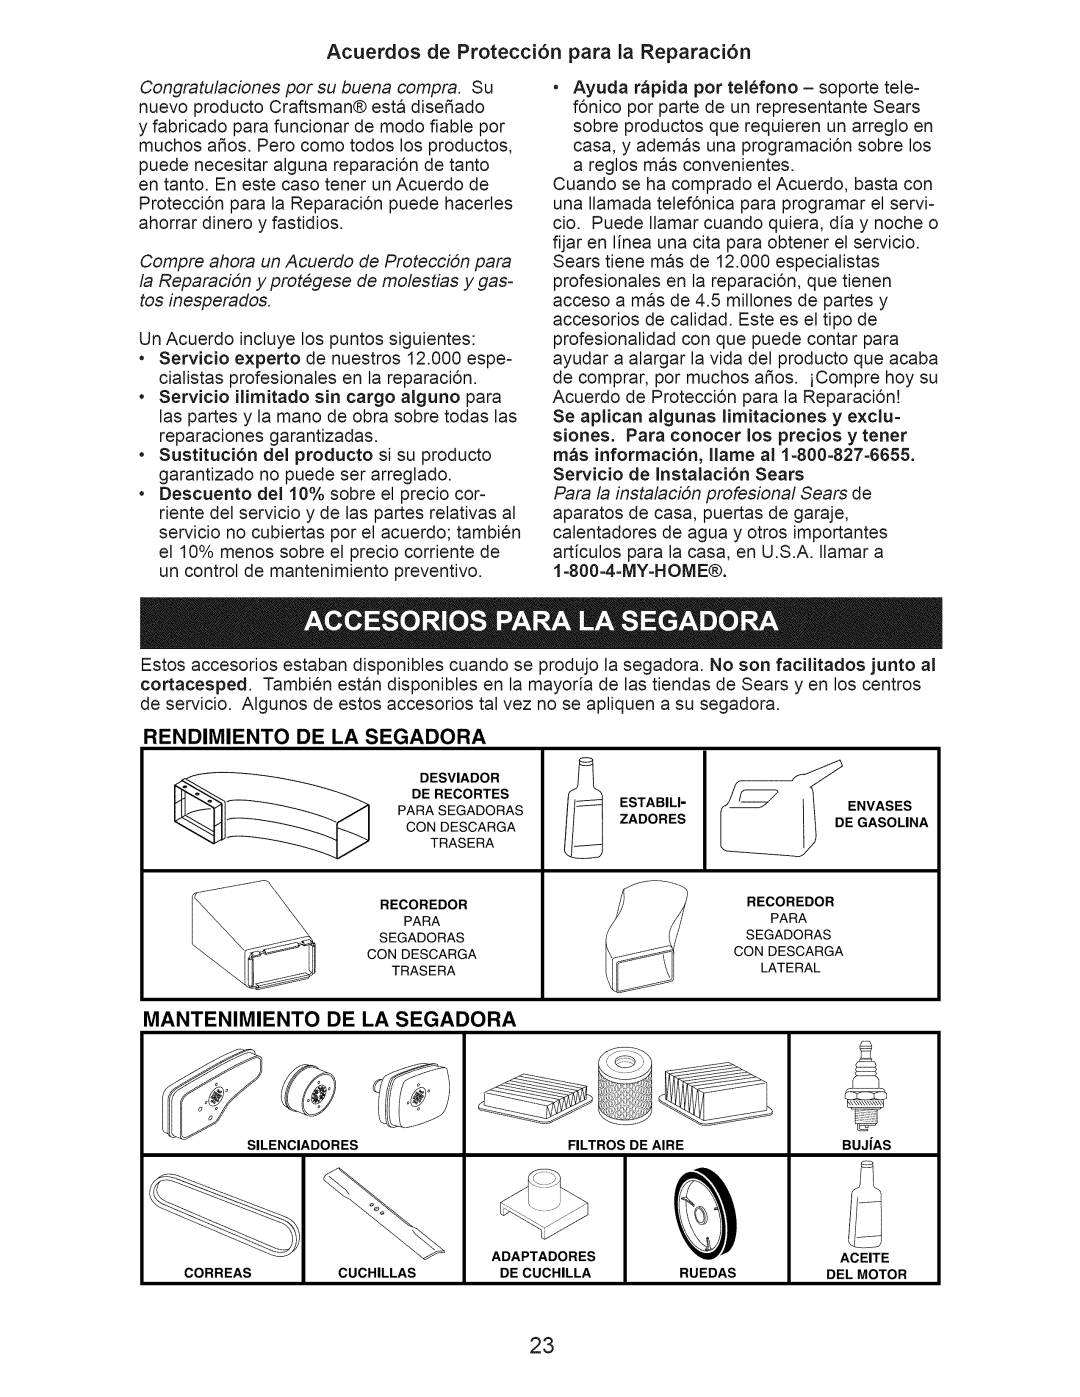 Craftsman 917.376391 owner manual Acuerdos de Protecci6n para la Reparaci6n, Rendimiento, De La Segadora, Mantenimiento 